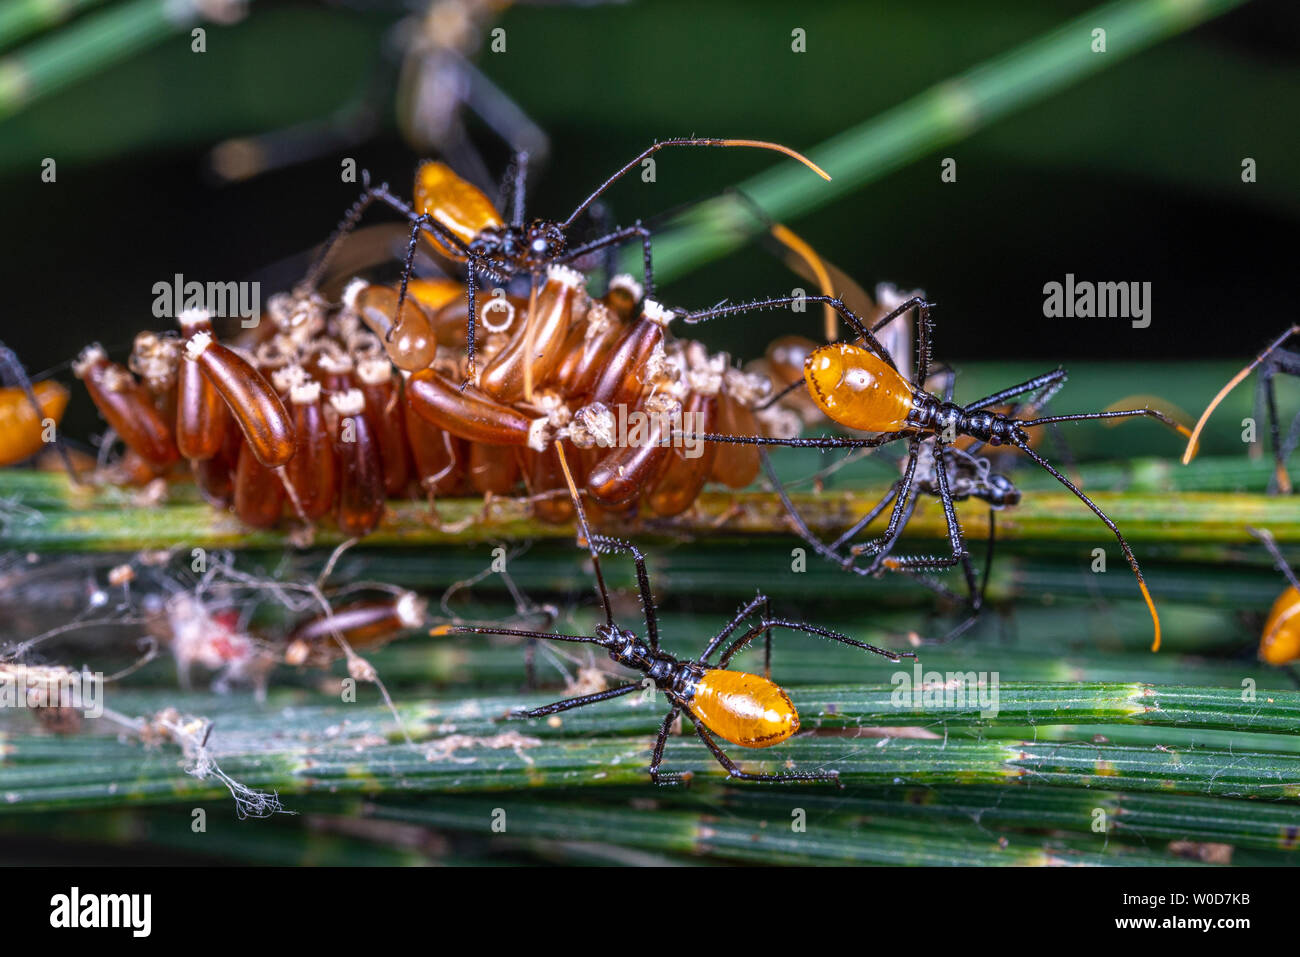 Baby orange assassin bugs, reduvidae, Hémiptères, l'éclosion d'une grappe d'oeufs Banque D'Images